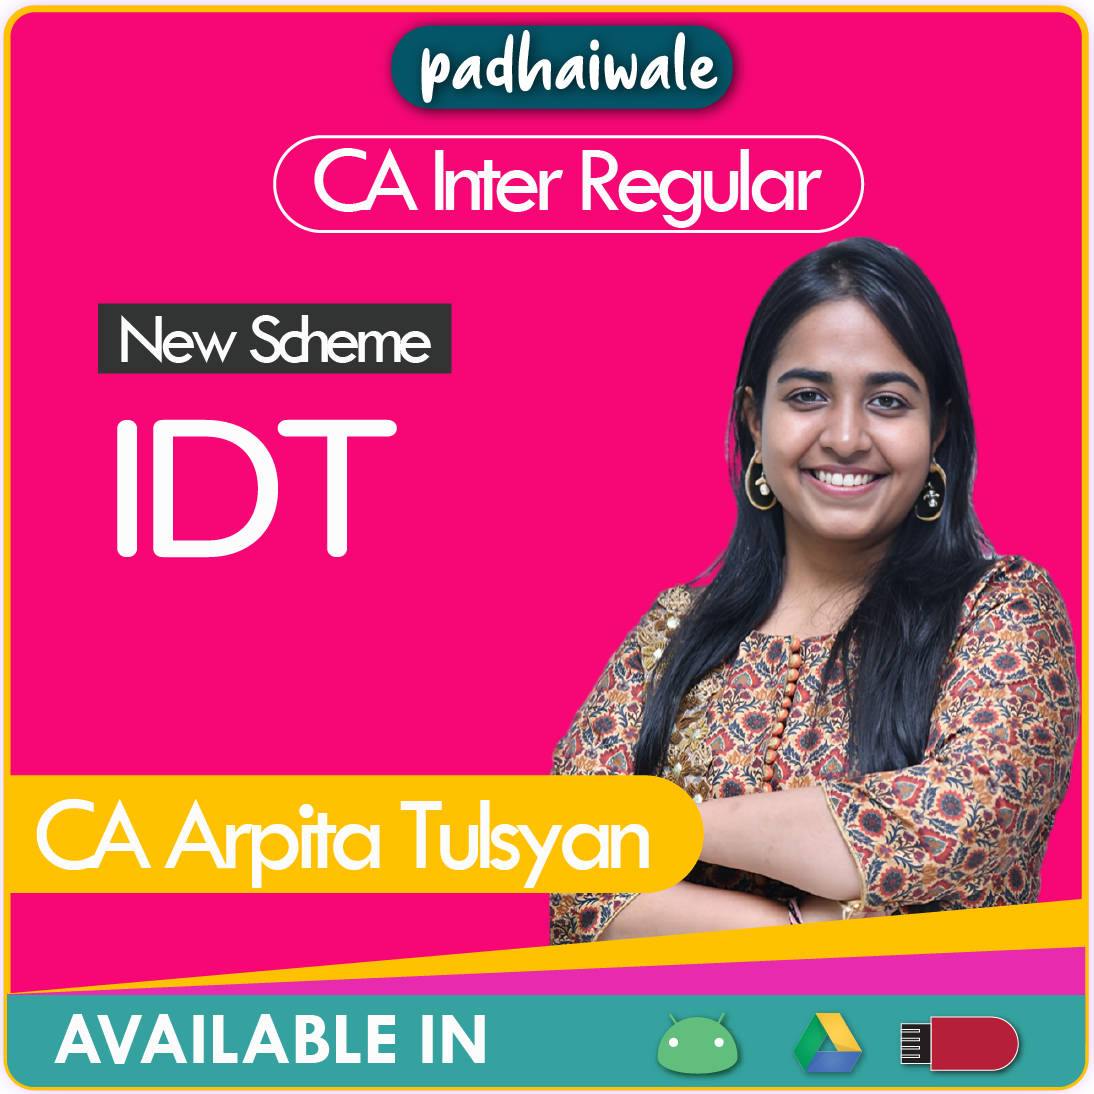 CA Inter IDT New Scheme Arpita Tulsyan